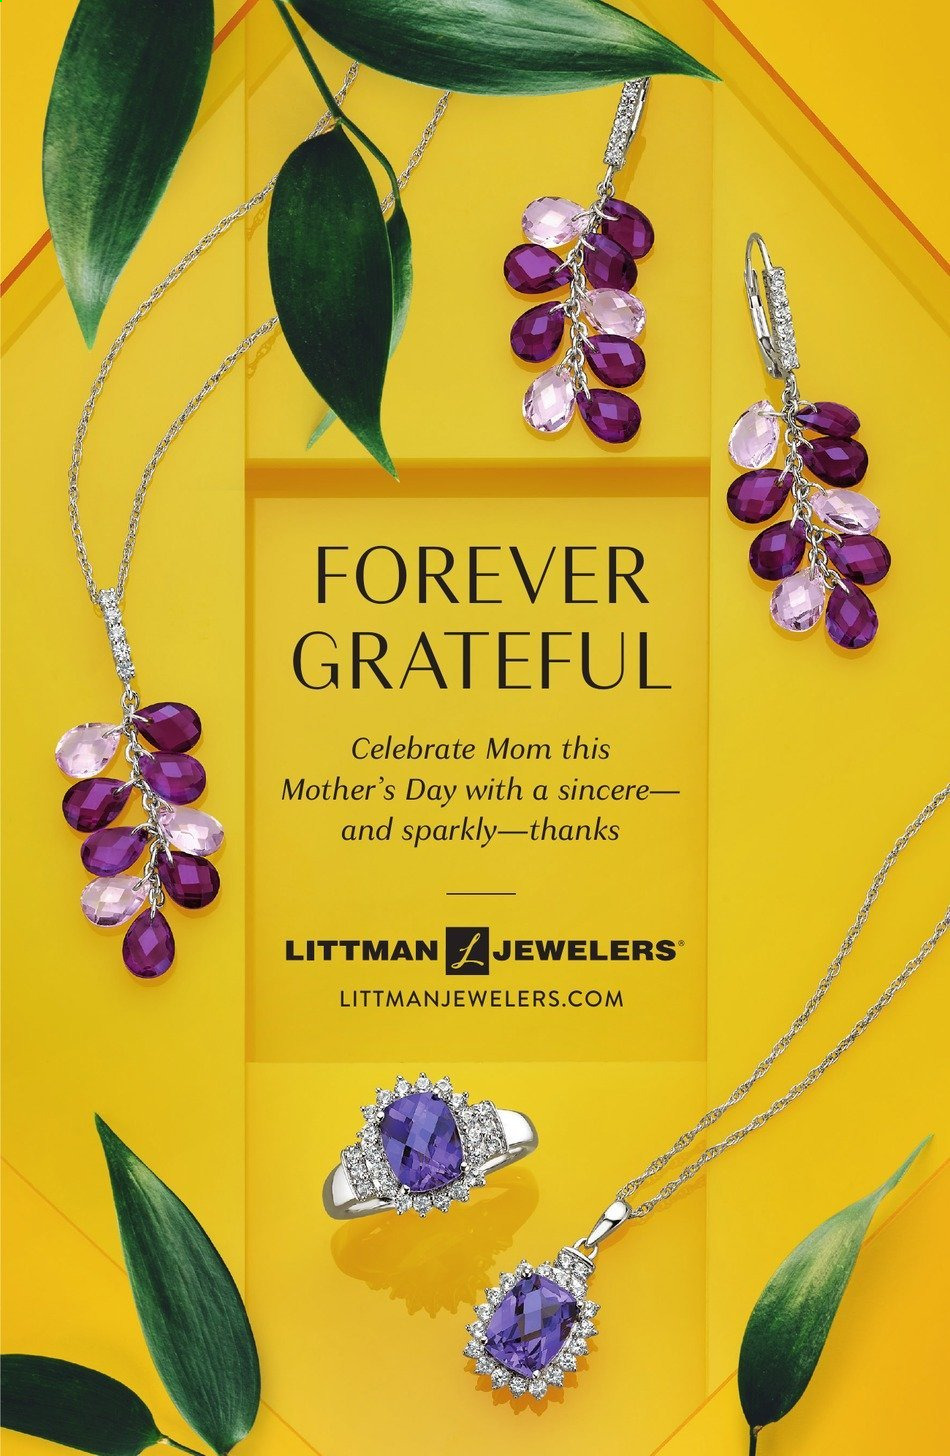 Littman Jewelers ad .